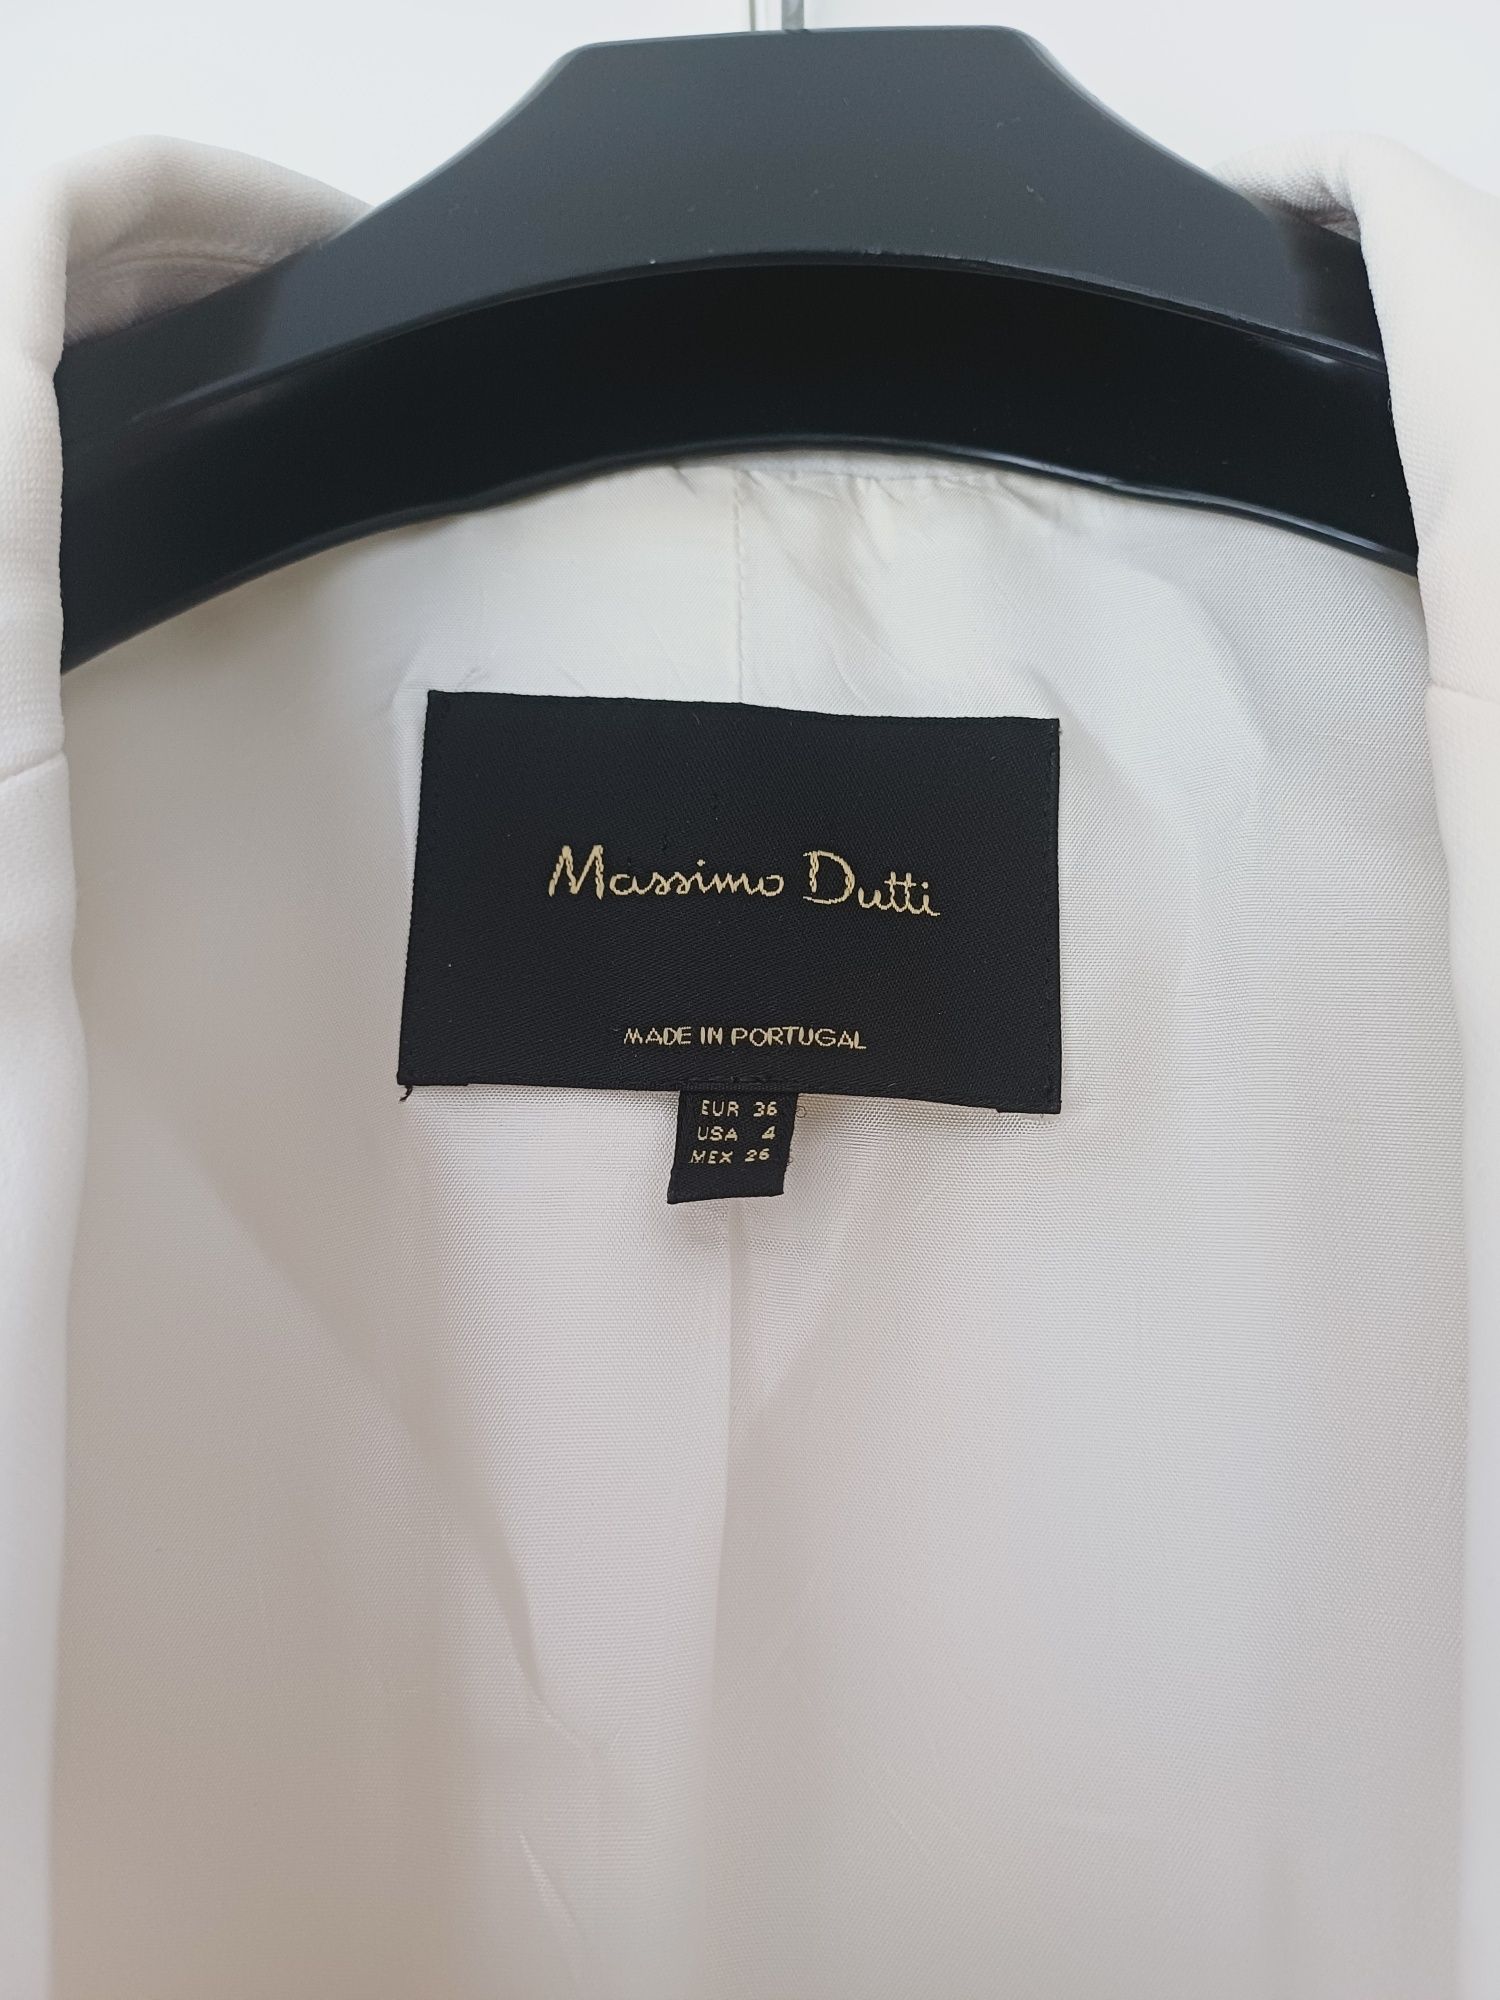 Massimo Dutti marynarka dwurzędowa dłuższa wiskoza biała kremowa ecru